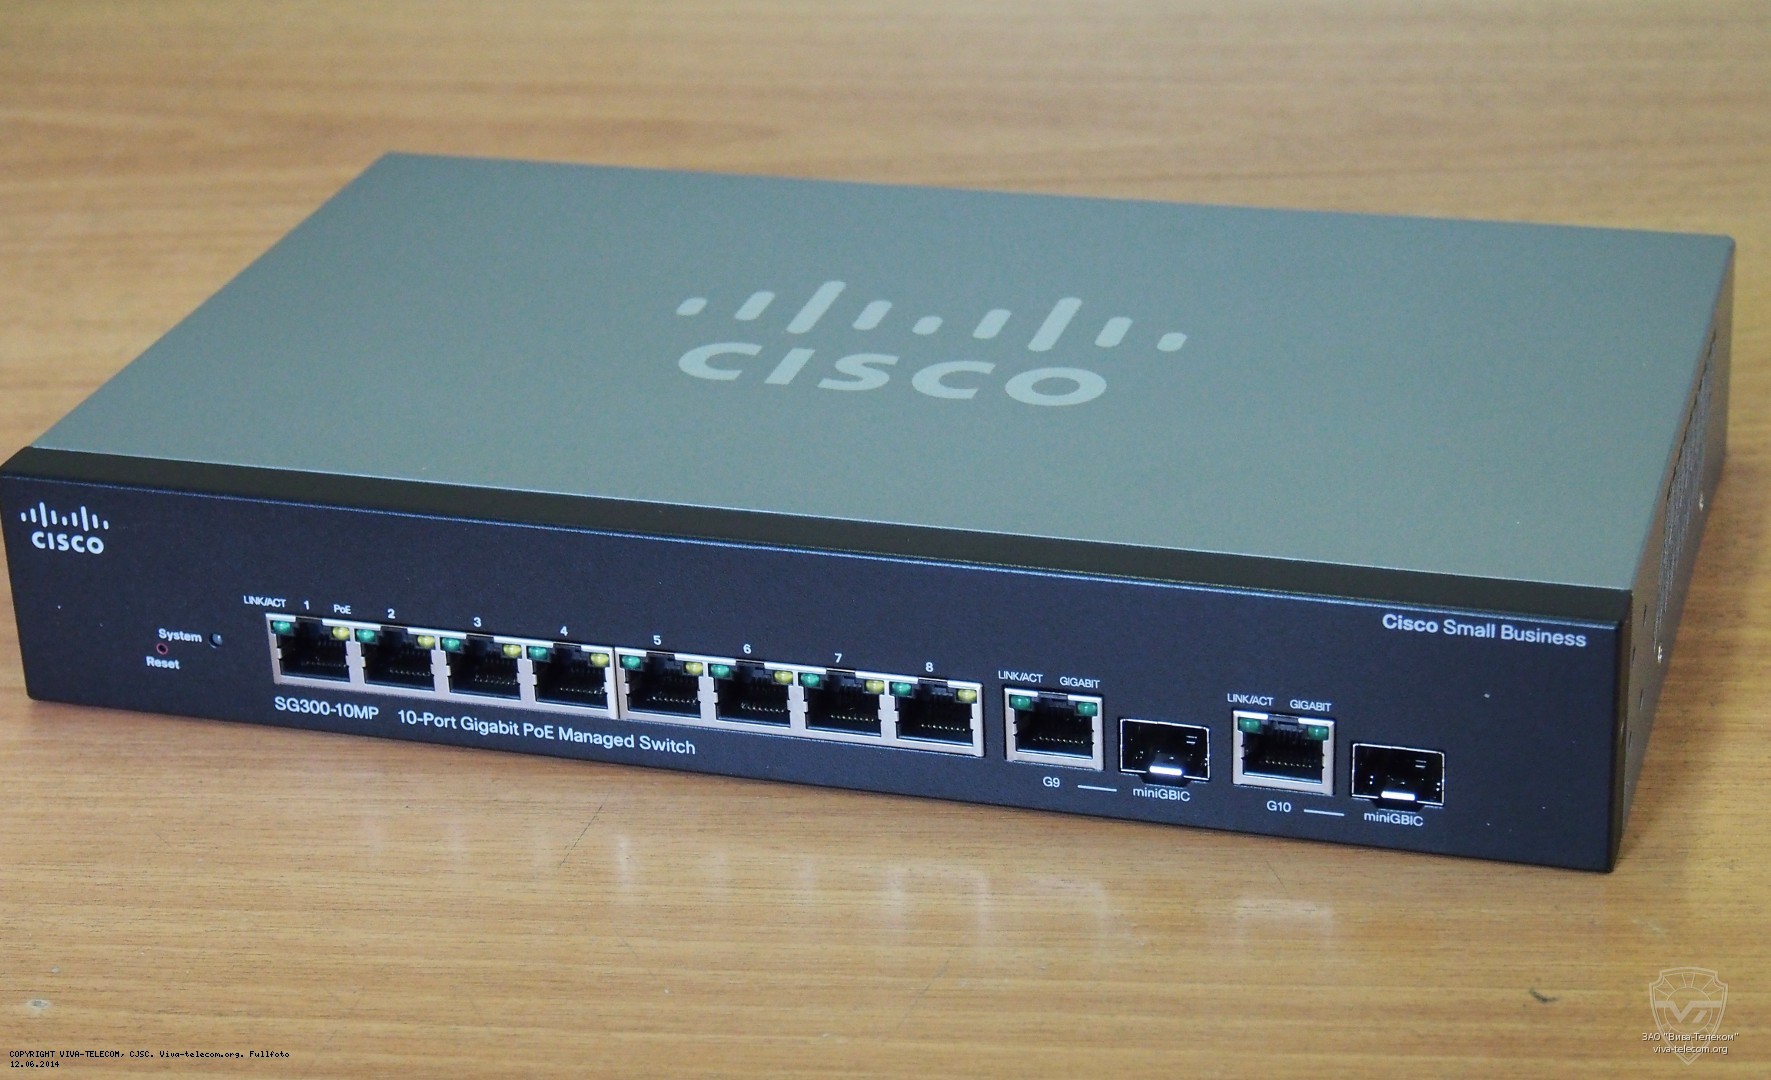    Cisco SG300-10MP